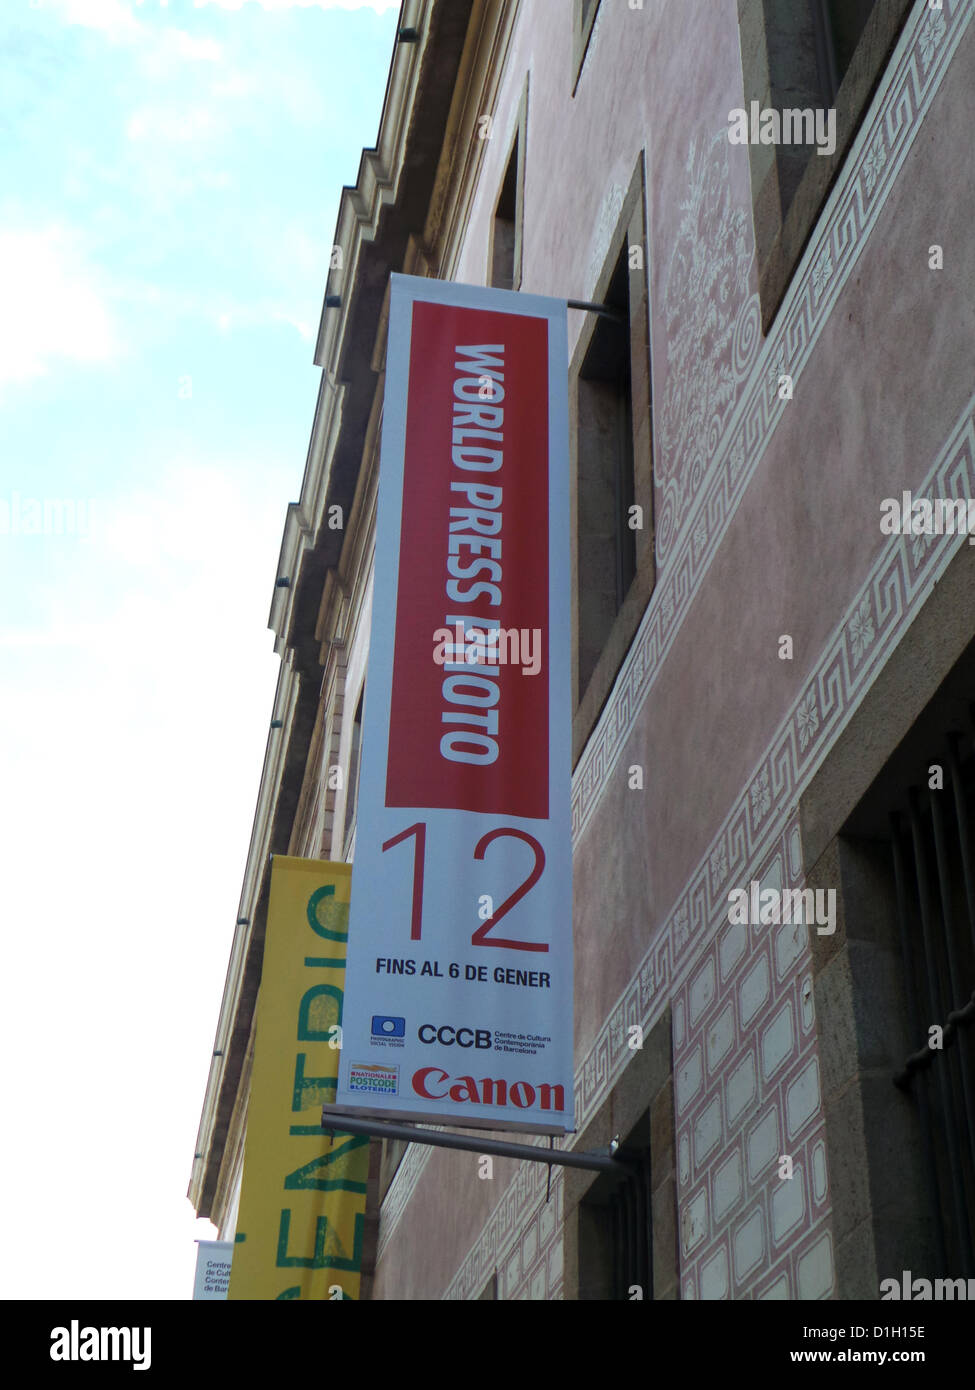 L'exposition World Press Photo à Barcelone est situé dans le Centre de Culture Contemporaine de Barcelone (CCCB) jusqu'au 6 janvier 2013. Le catalan Samuel Aranda a gagné cette année et a une exposition dans le même lieu avec le nom "Après la Révolution". Banque D'Images